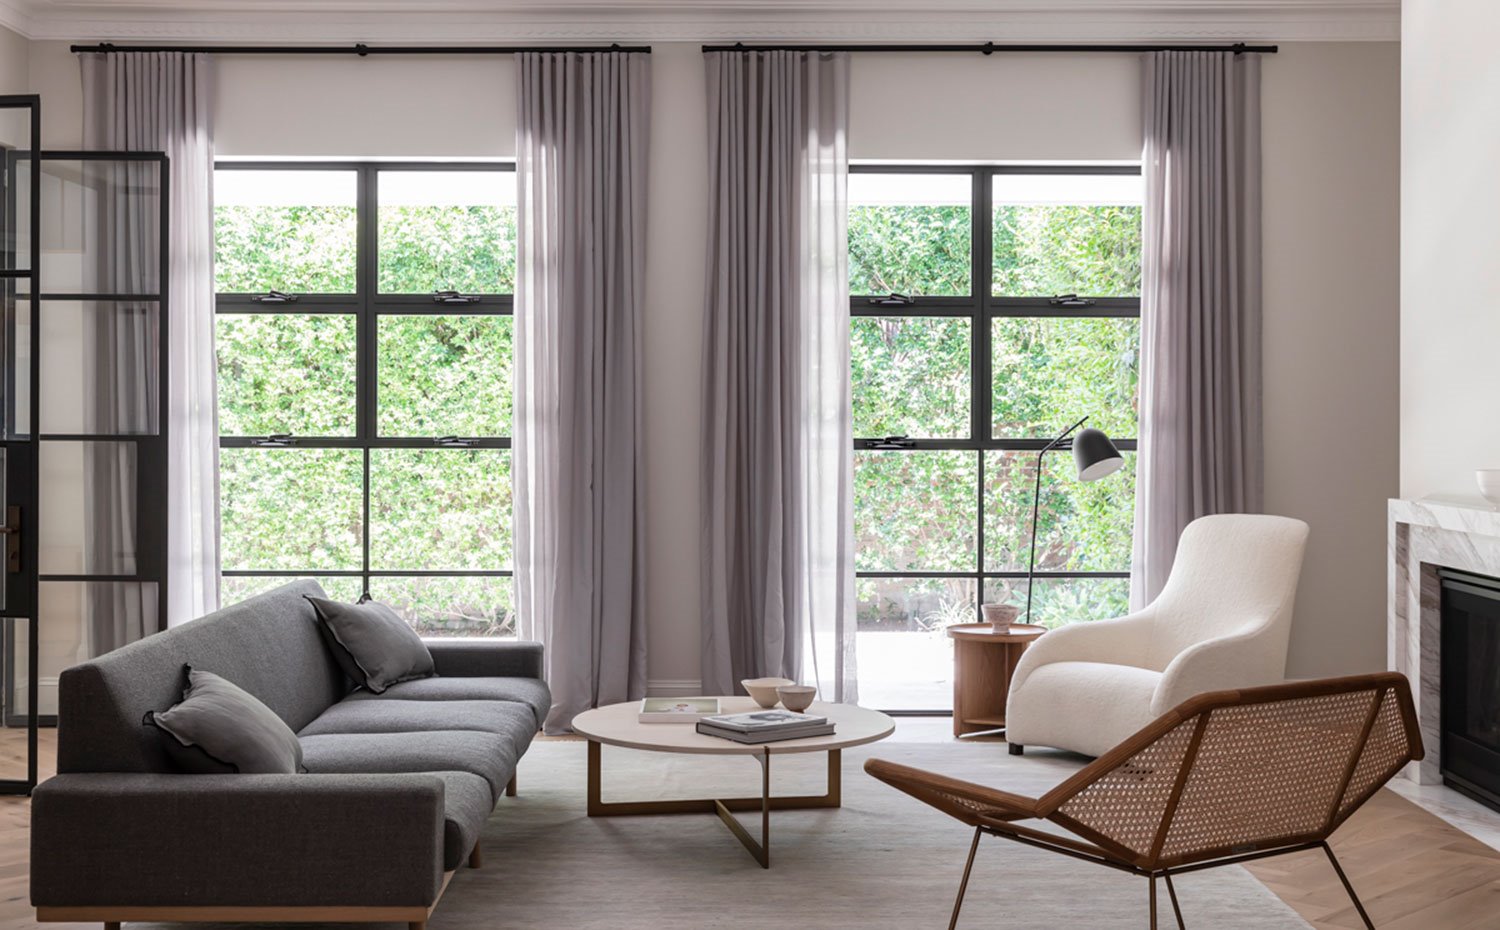 Salón con amplios ventanales provistos de cortinas grises, butaca cruda, sofá ris y asiento con estructura perforada, mesa de centro circular de madera